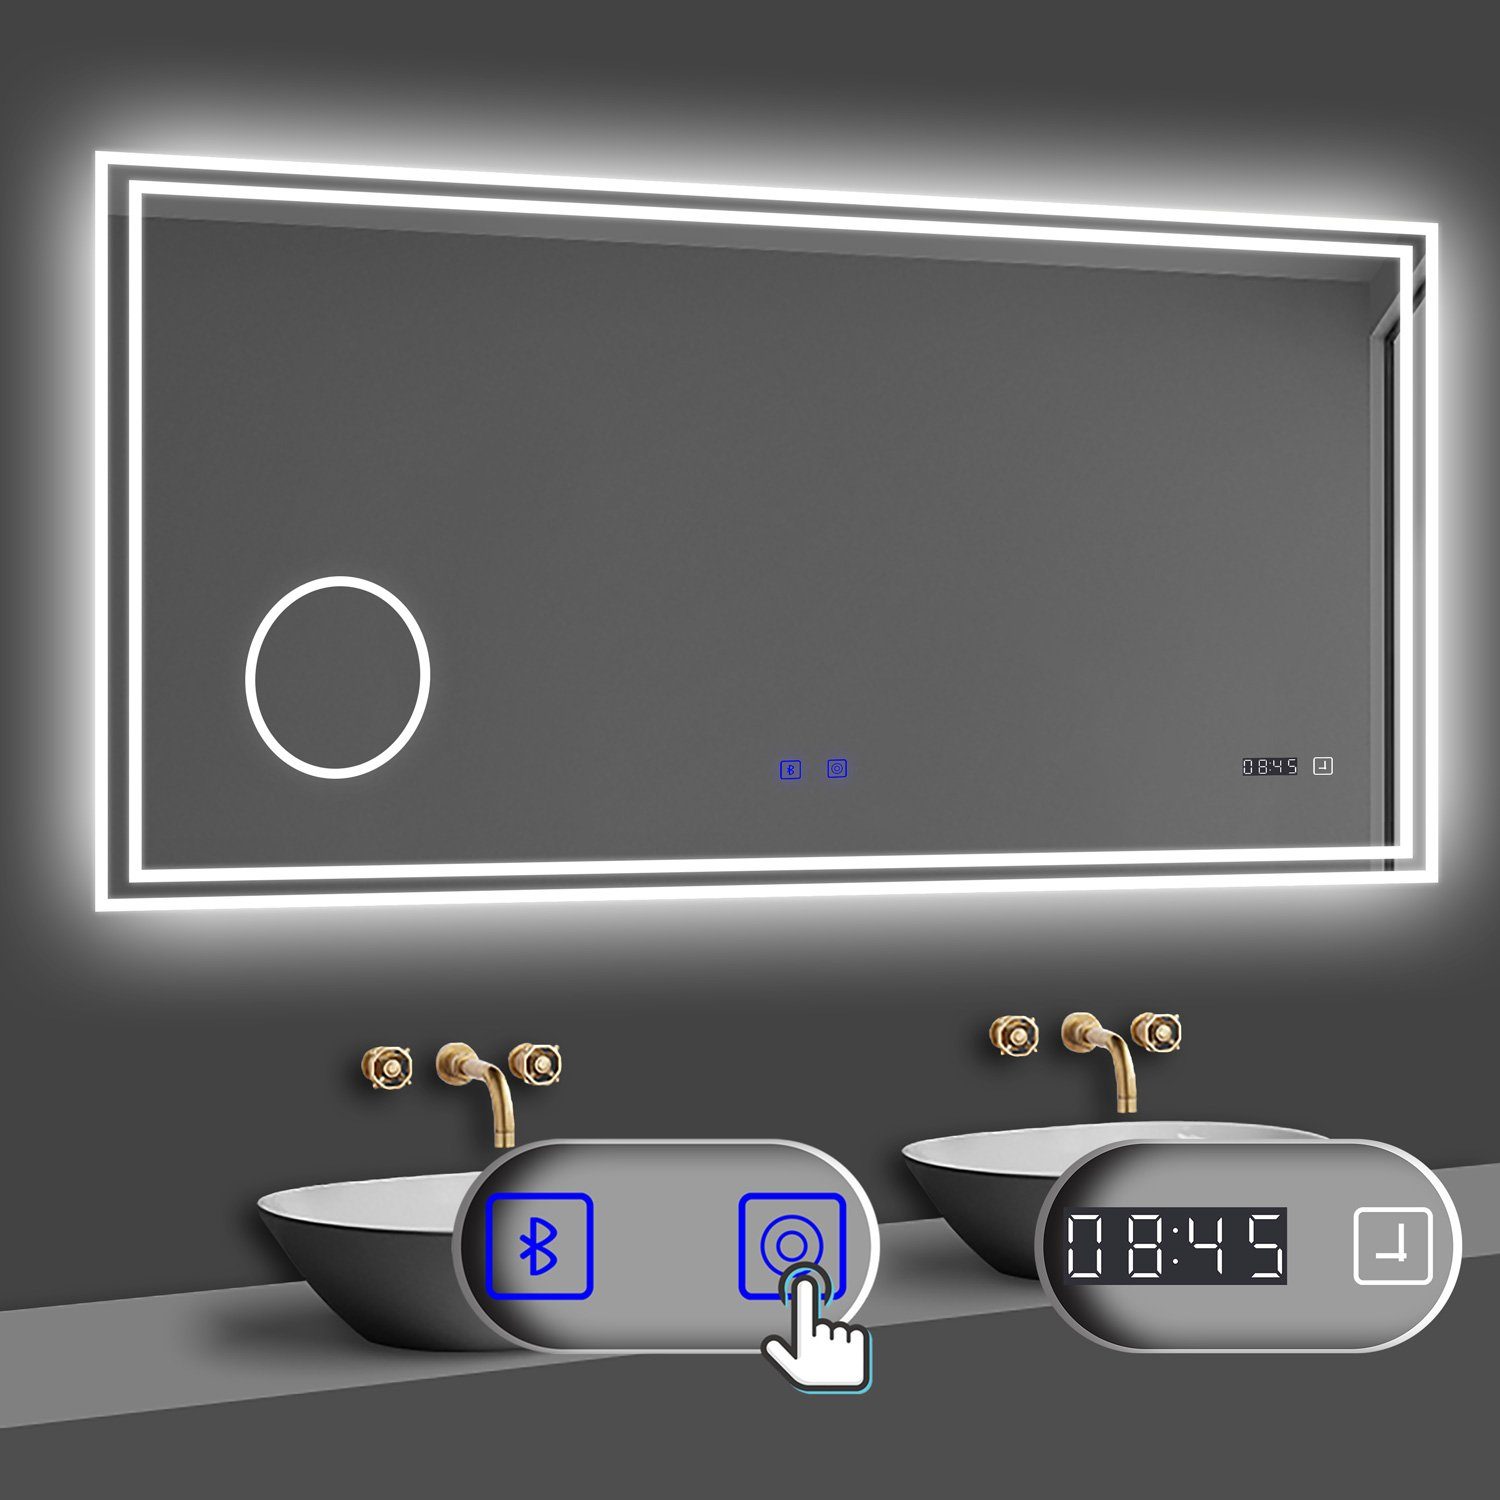 duschspa Badspiegel 80-160cm mit LED, Uhr, Beschlagfrei, Schminkspiegel, Kalt/Warm/Neutral Licht, dimmbar, Helligkeit-Speicherfunktion